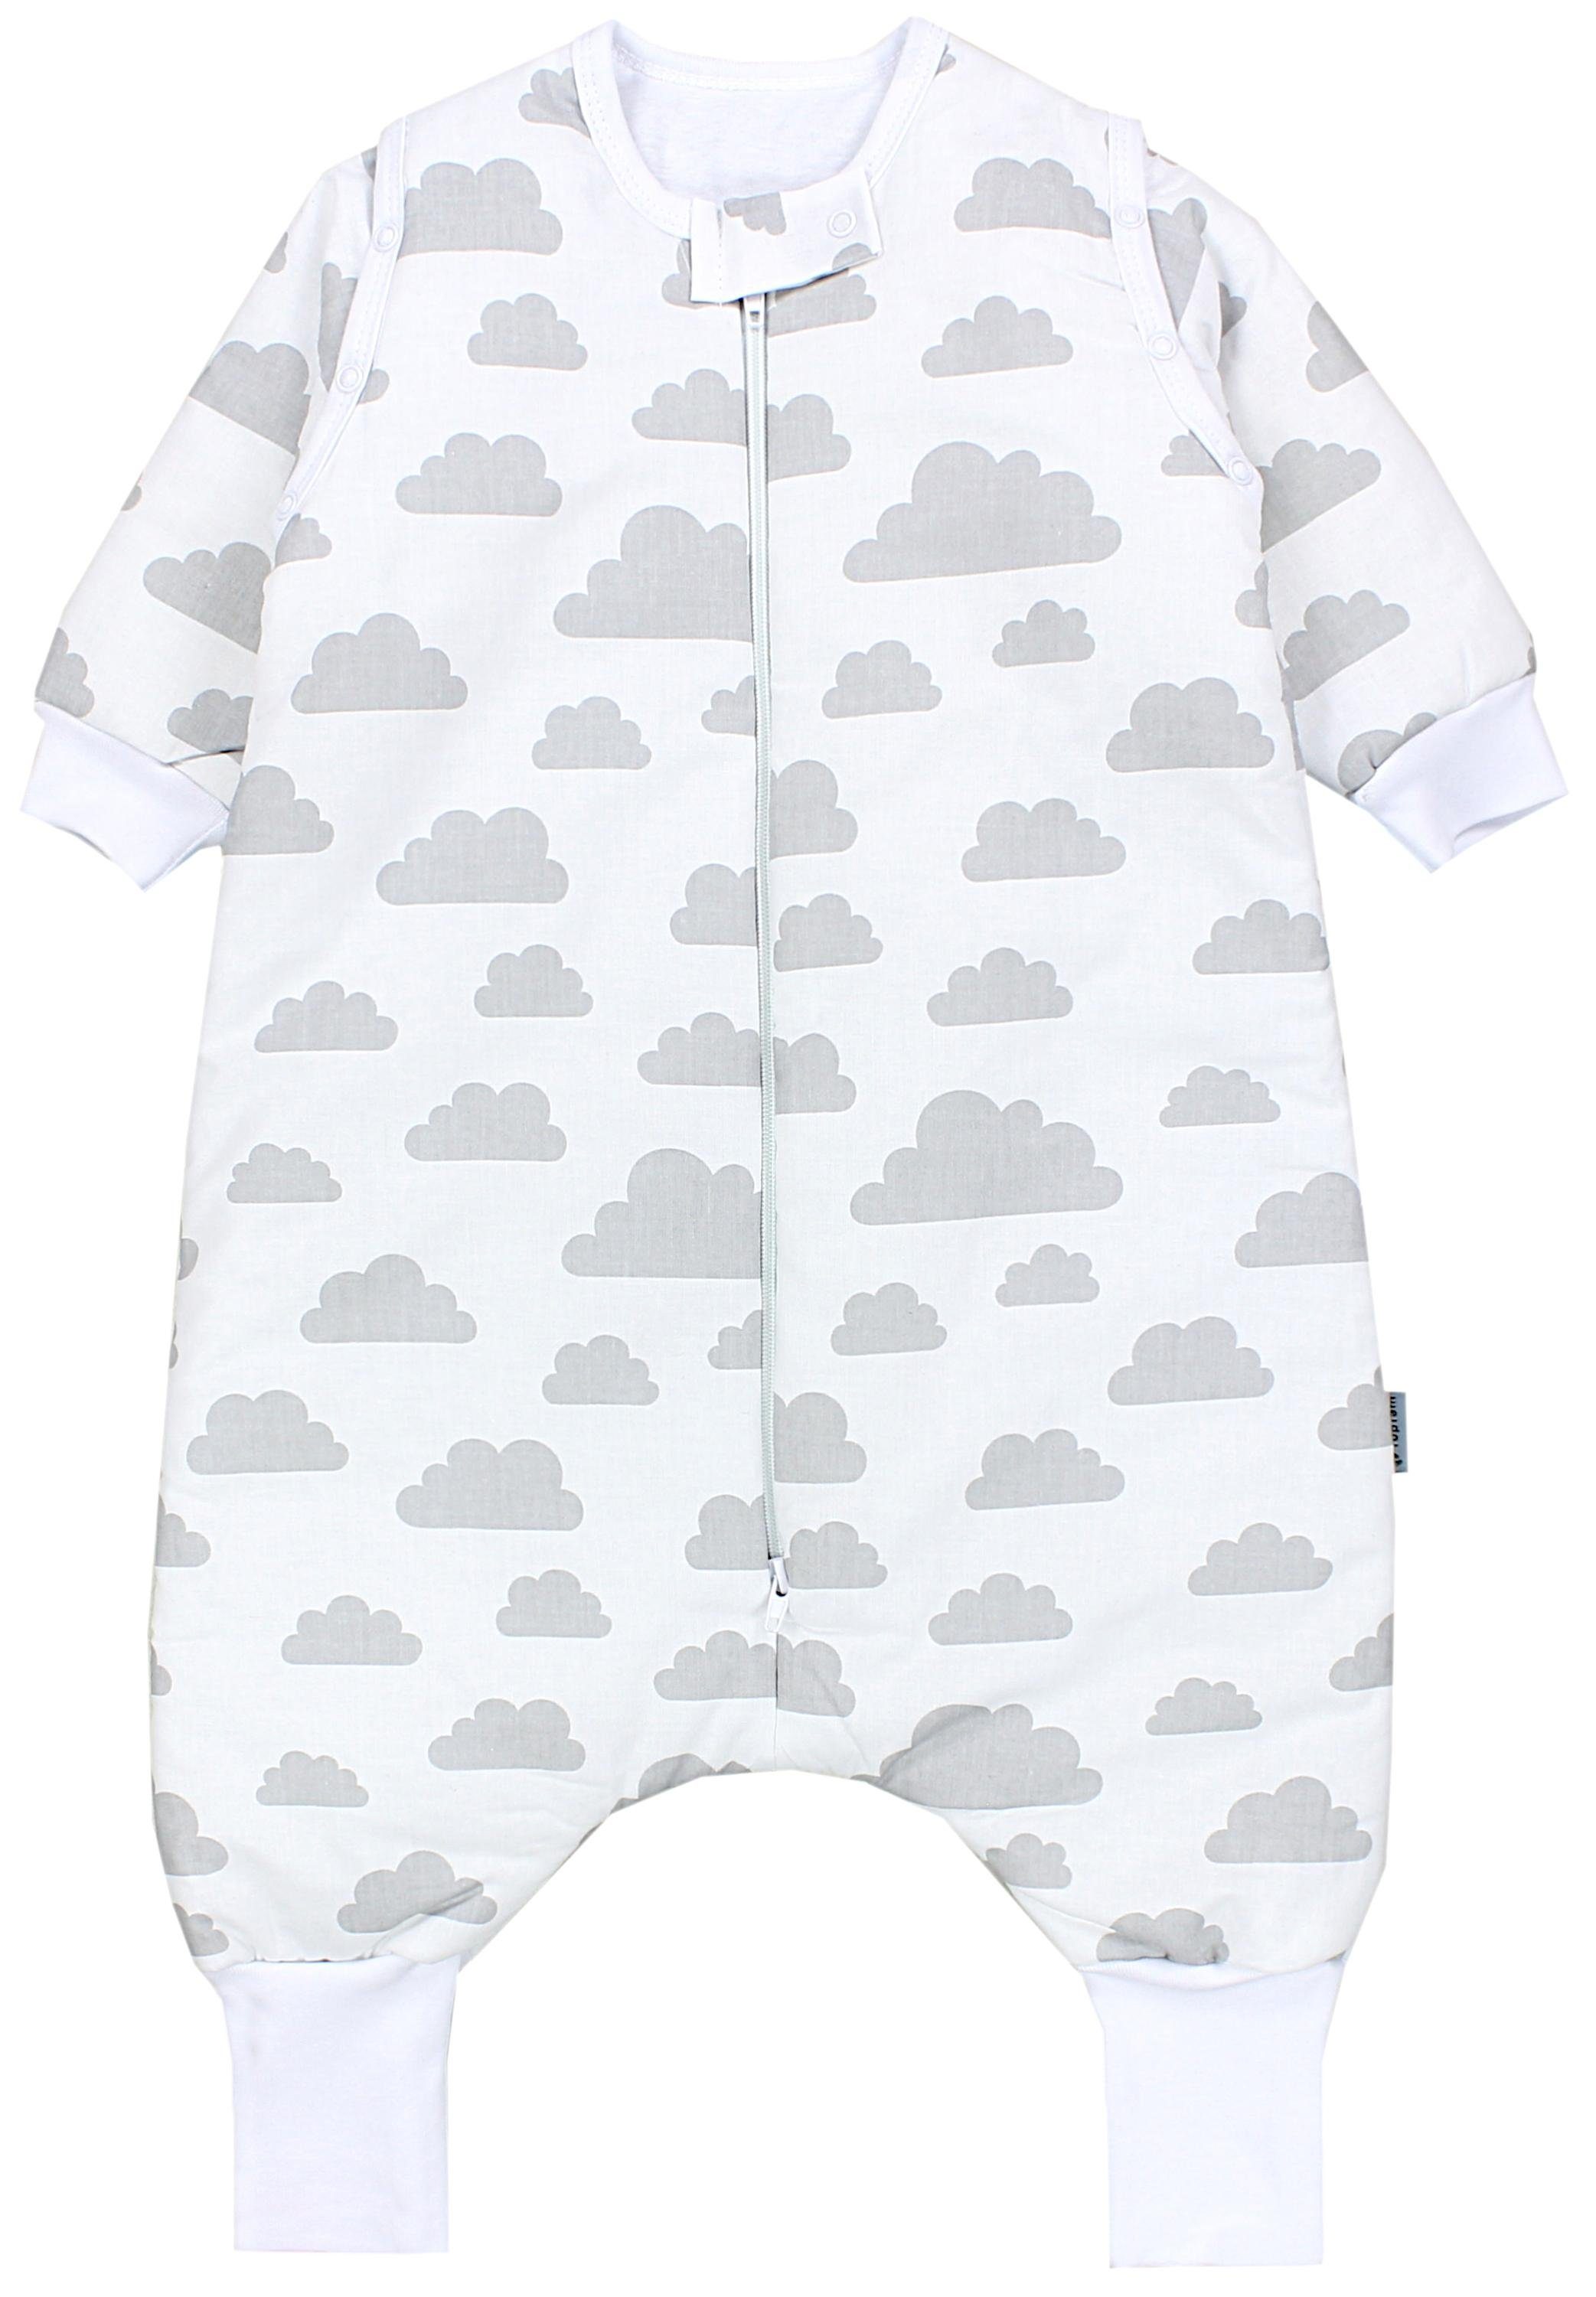 TupTam Babyschlafsack mit Armen und Beinen Winterschlafsack OEKO-TEX zertifiziert, Unisex Wolken Grau